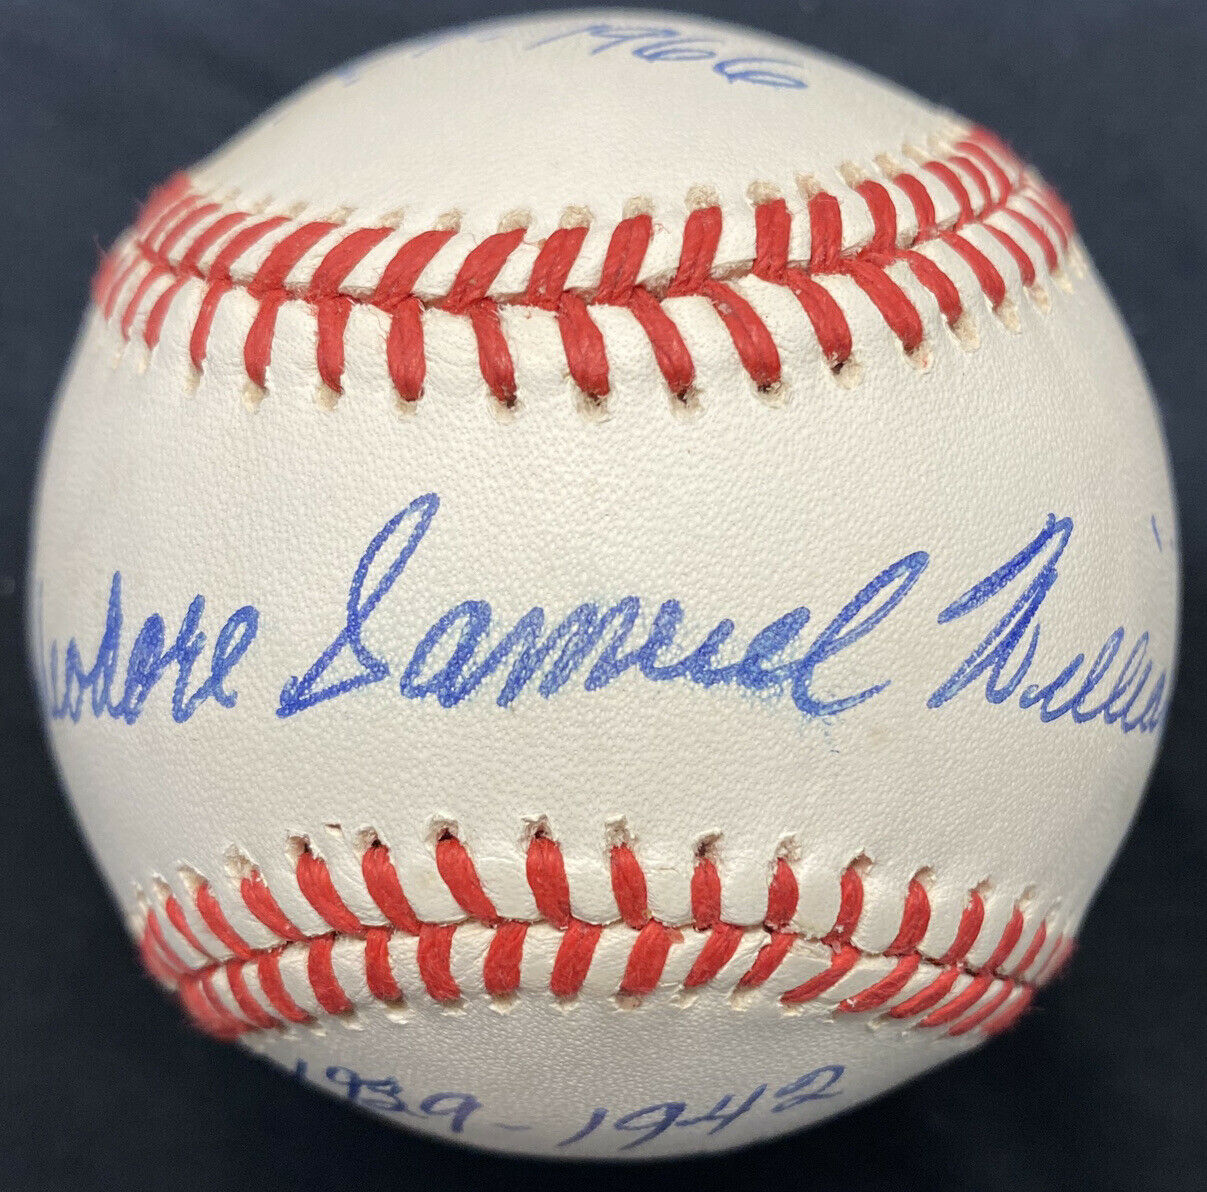 Theodore Samuel Williams Full Name HOF 1966 Signed Stat Baseball PSA LOA